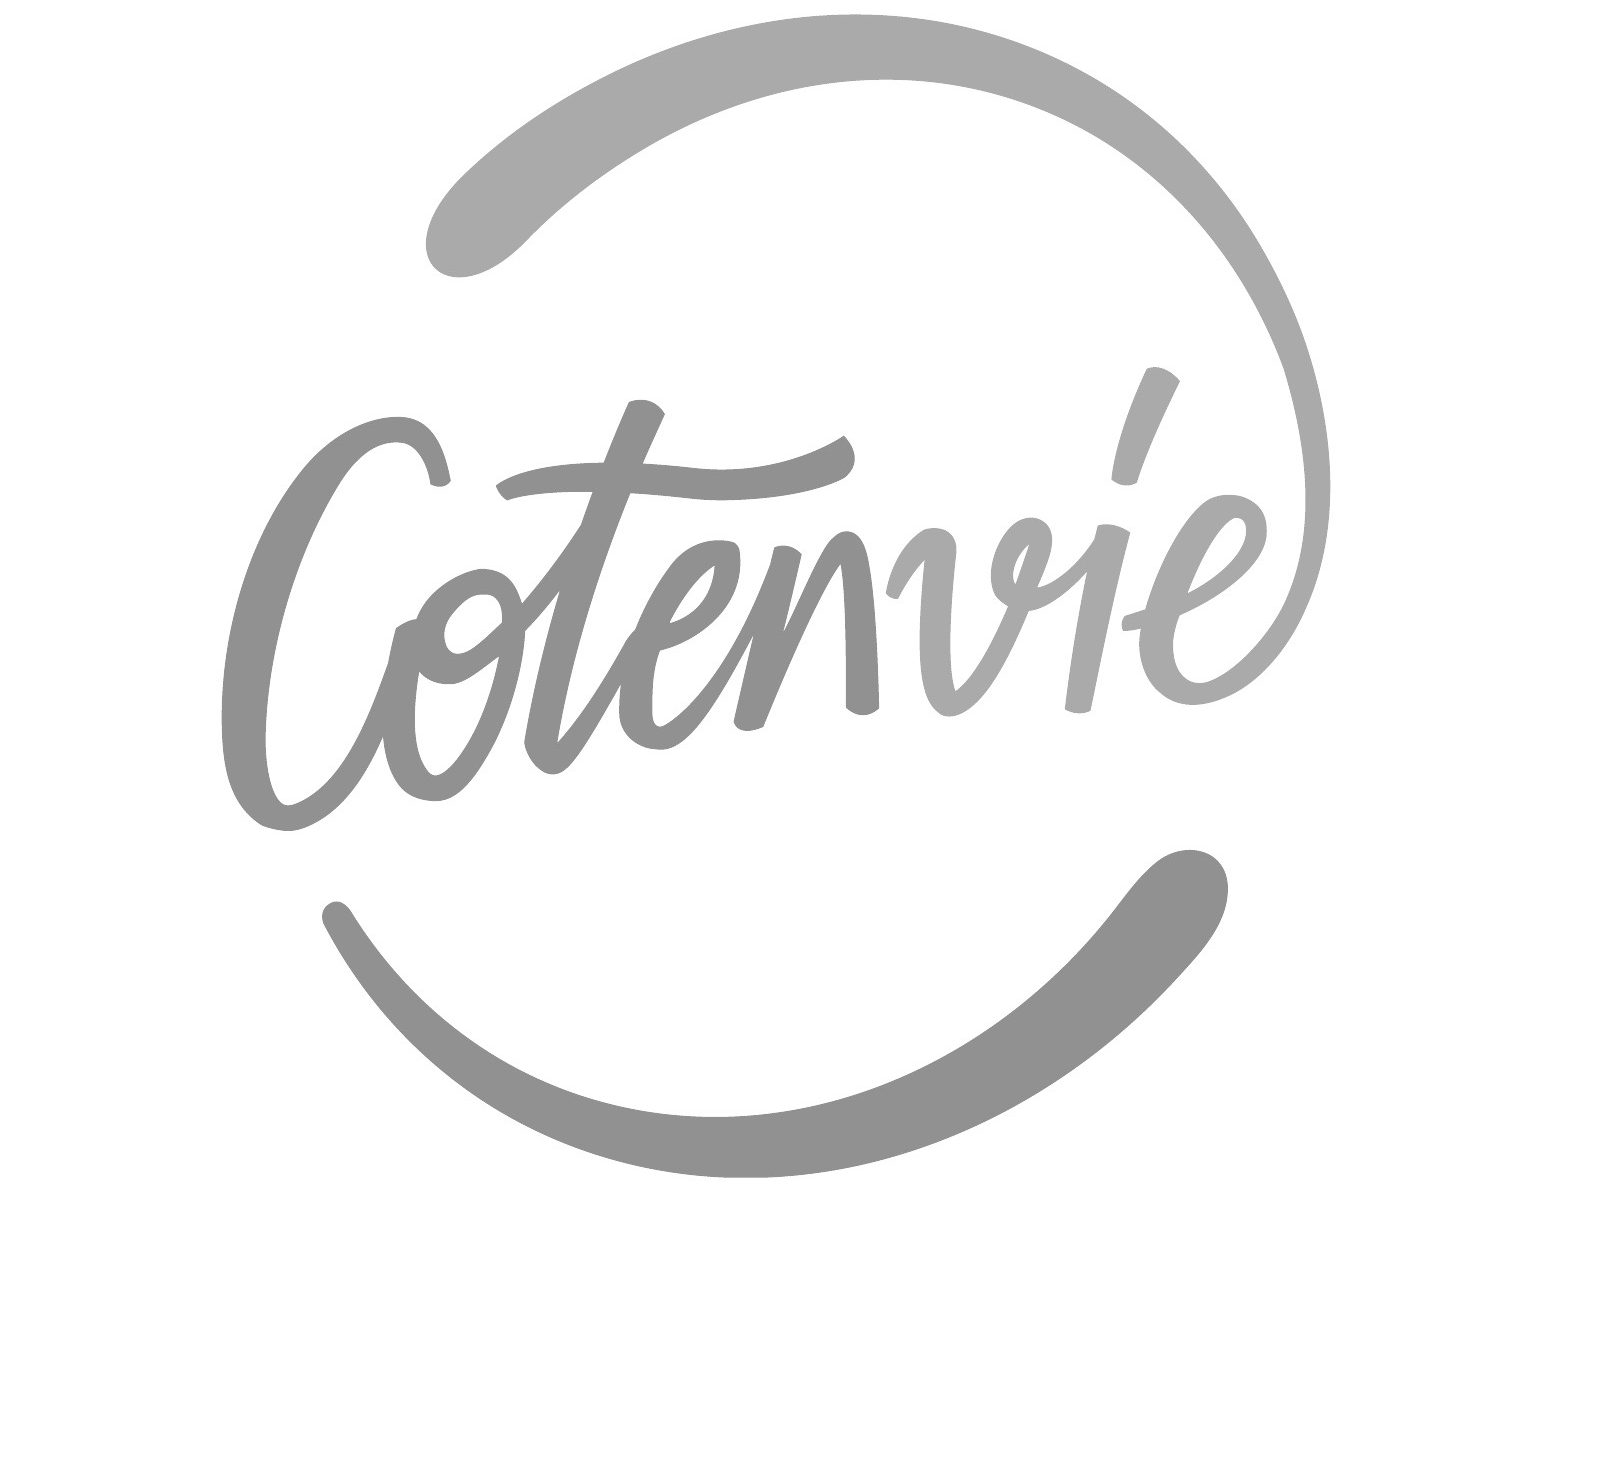 Cotenvie